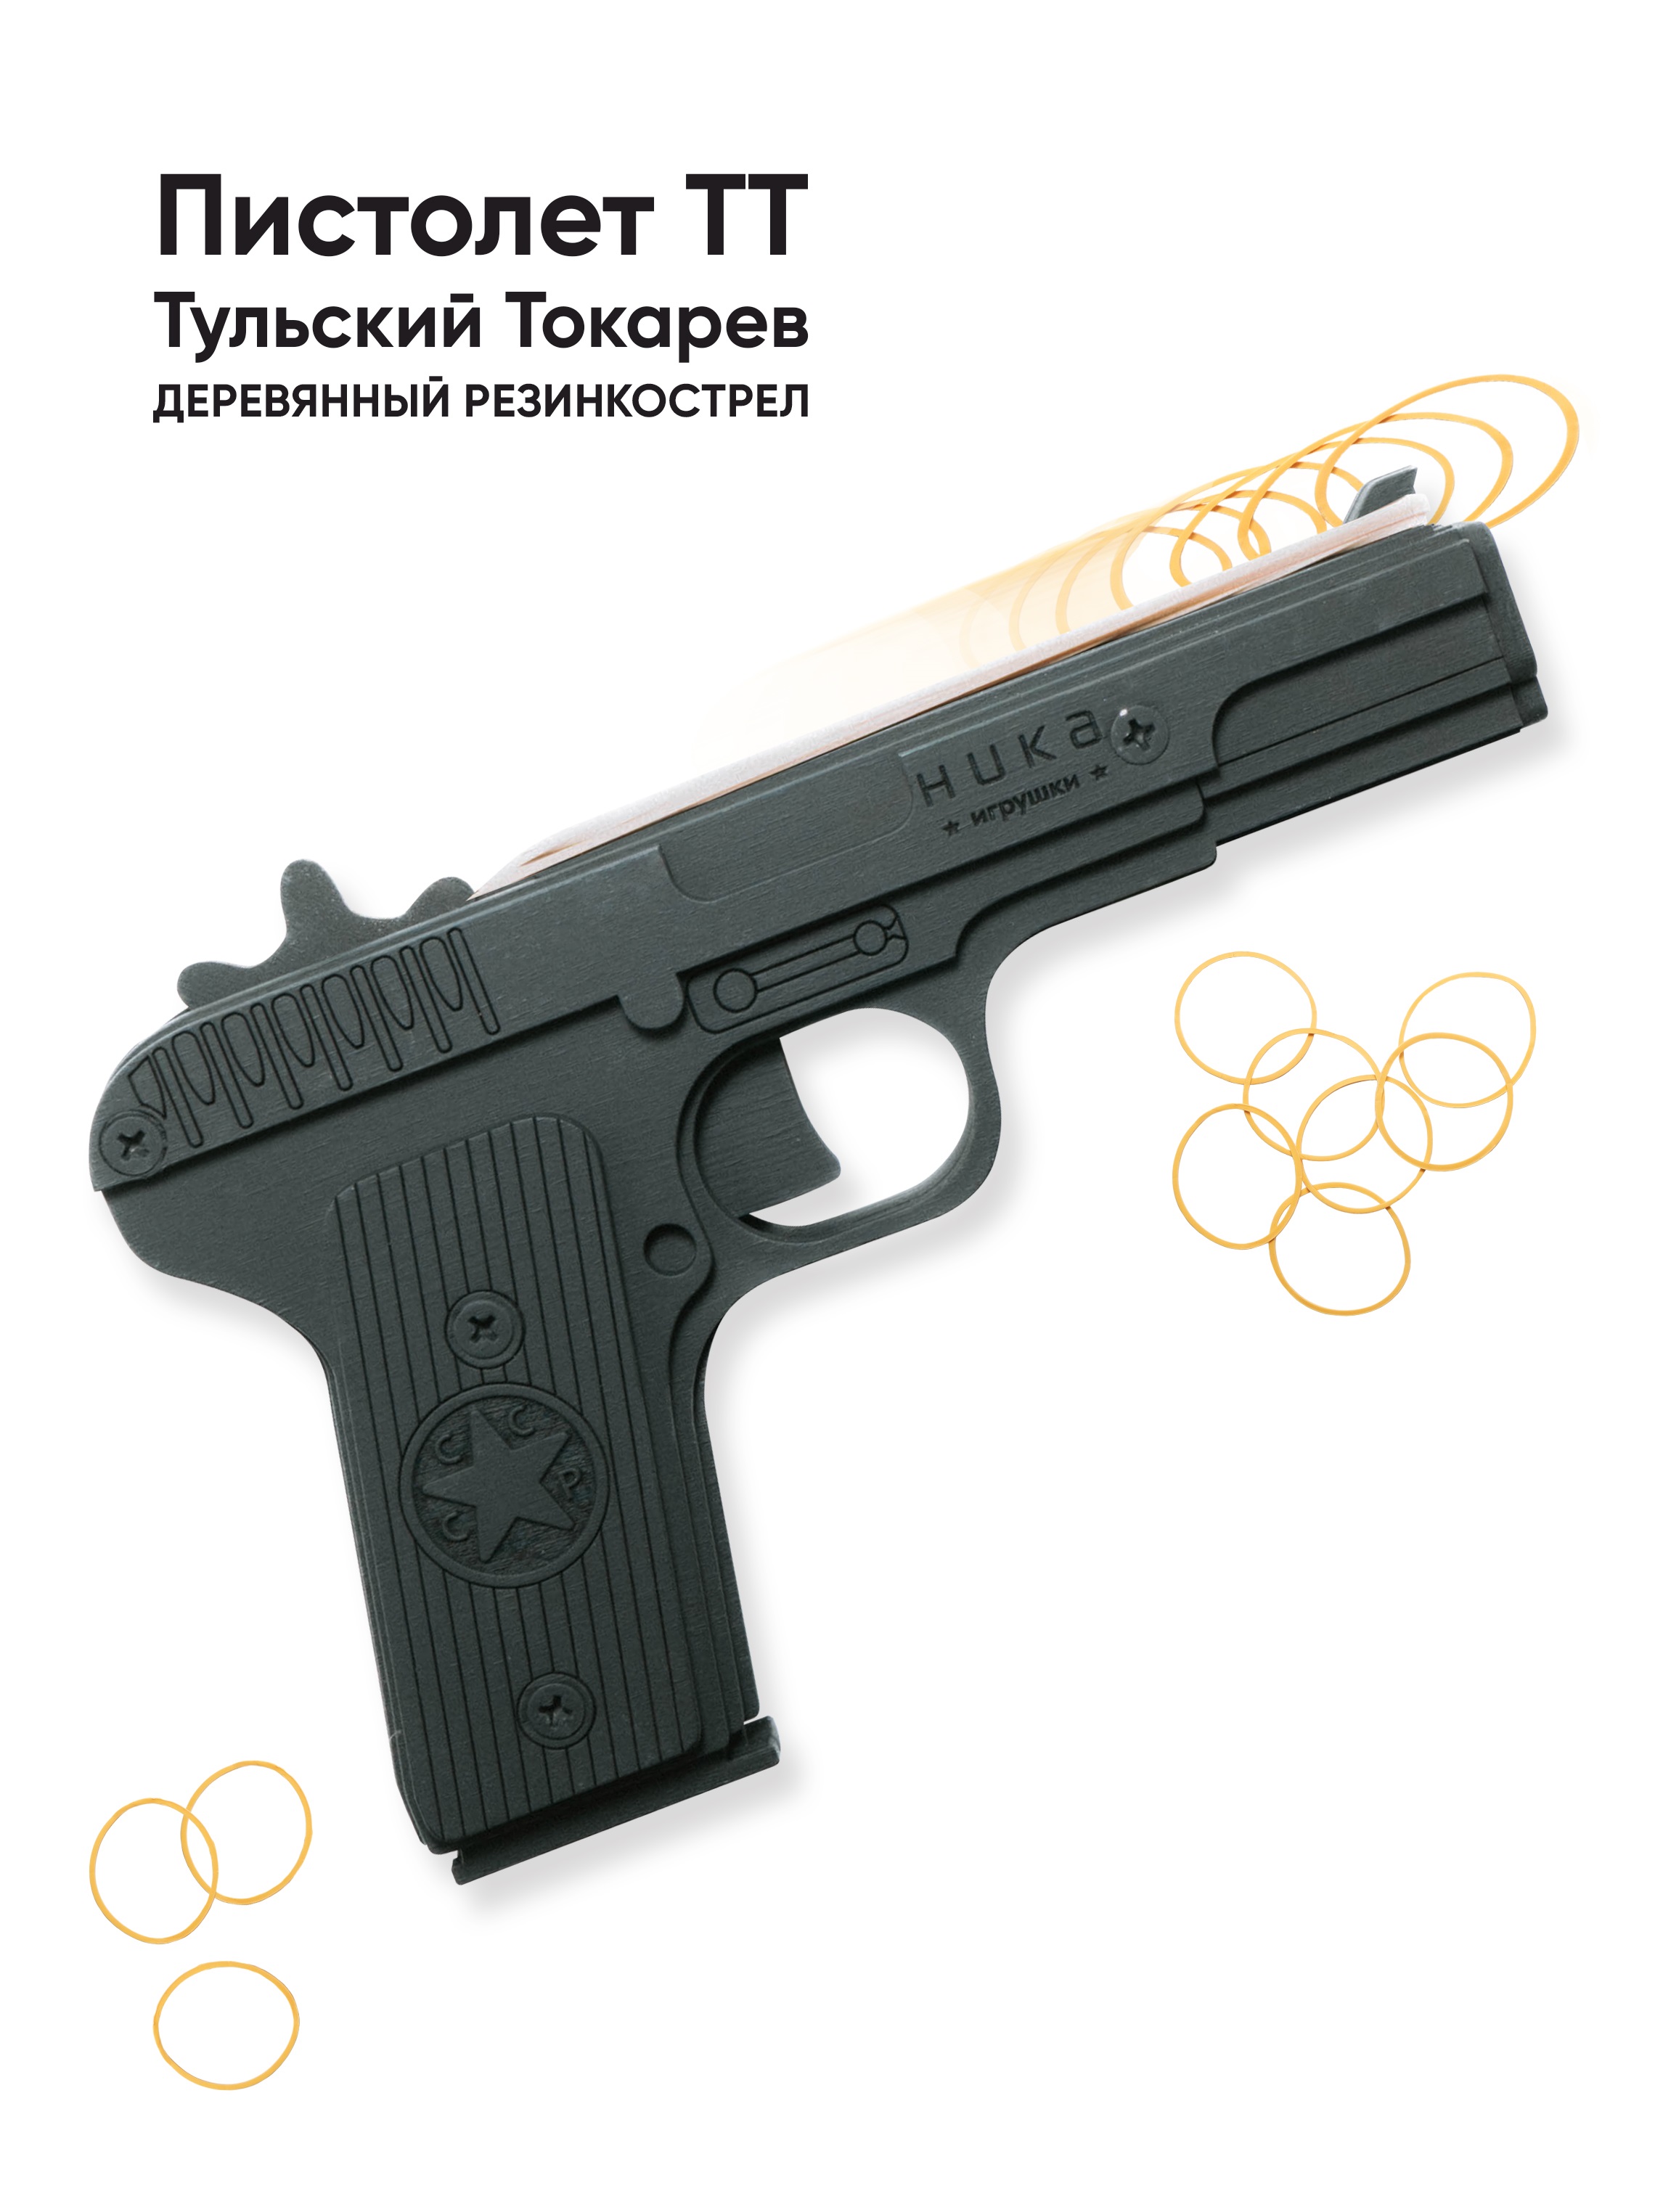 Пистолет игрушечный ТТ НИКА игрушки Резинкострел - фото 1